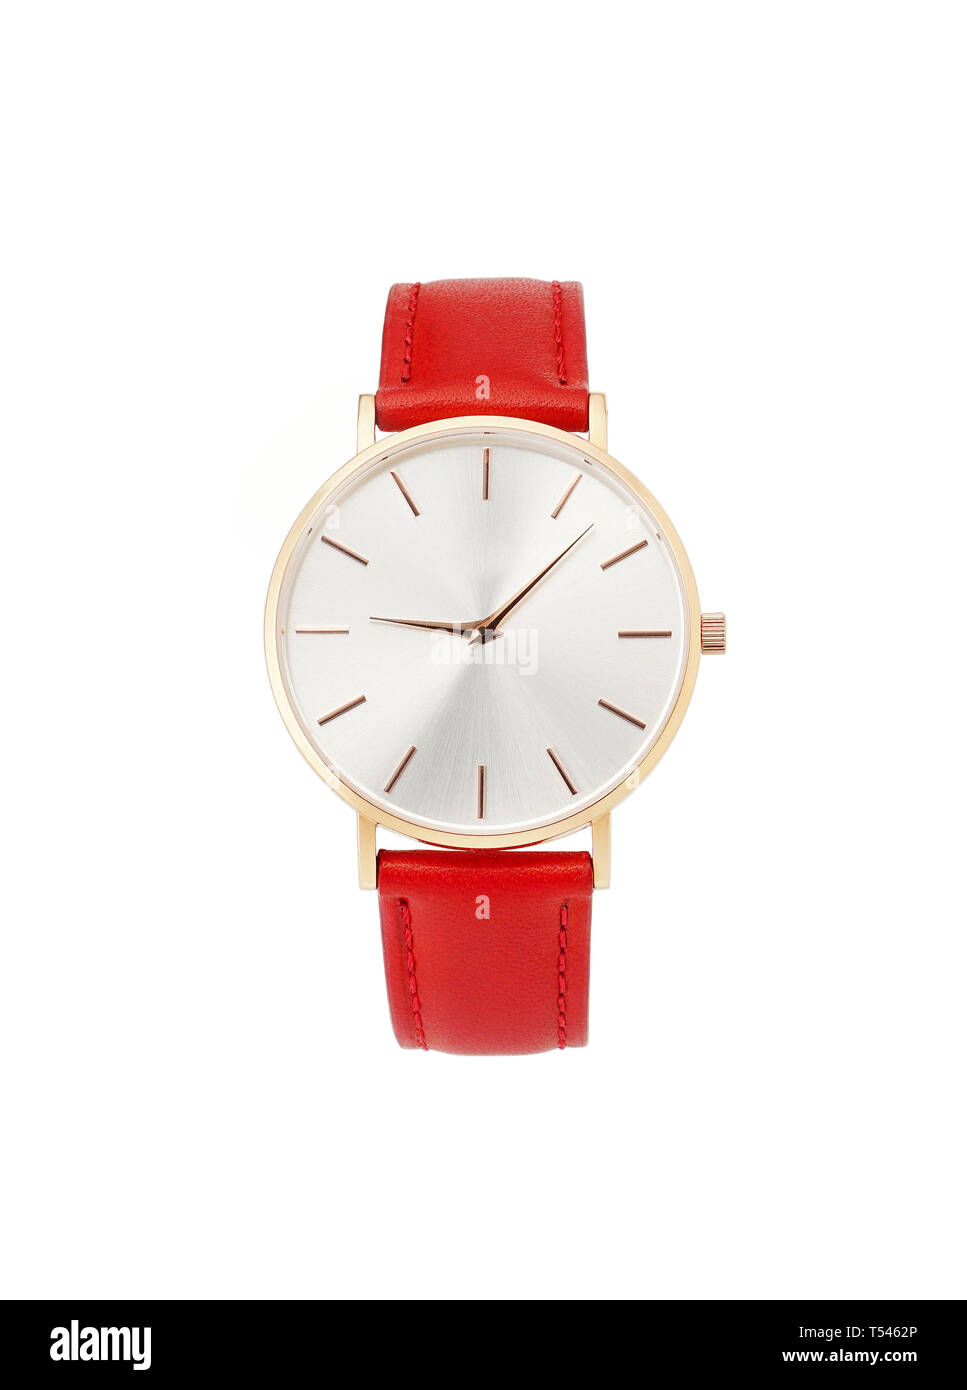 Gold's Classic Damenuhr mit weißem Zifferblatt, rotes Lederband, isolieren Sie auf einem weißen Hintergrund. Vorderansicht. Stockfoto